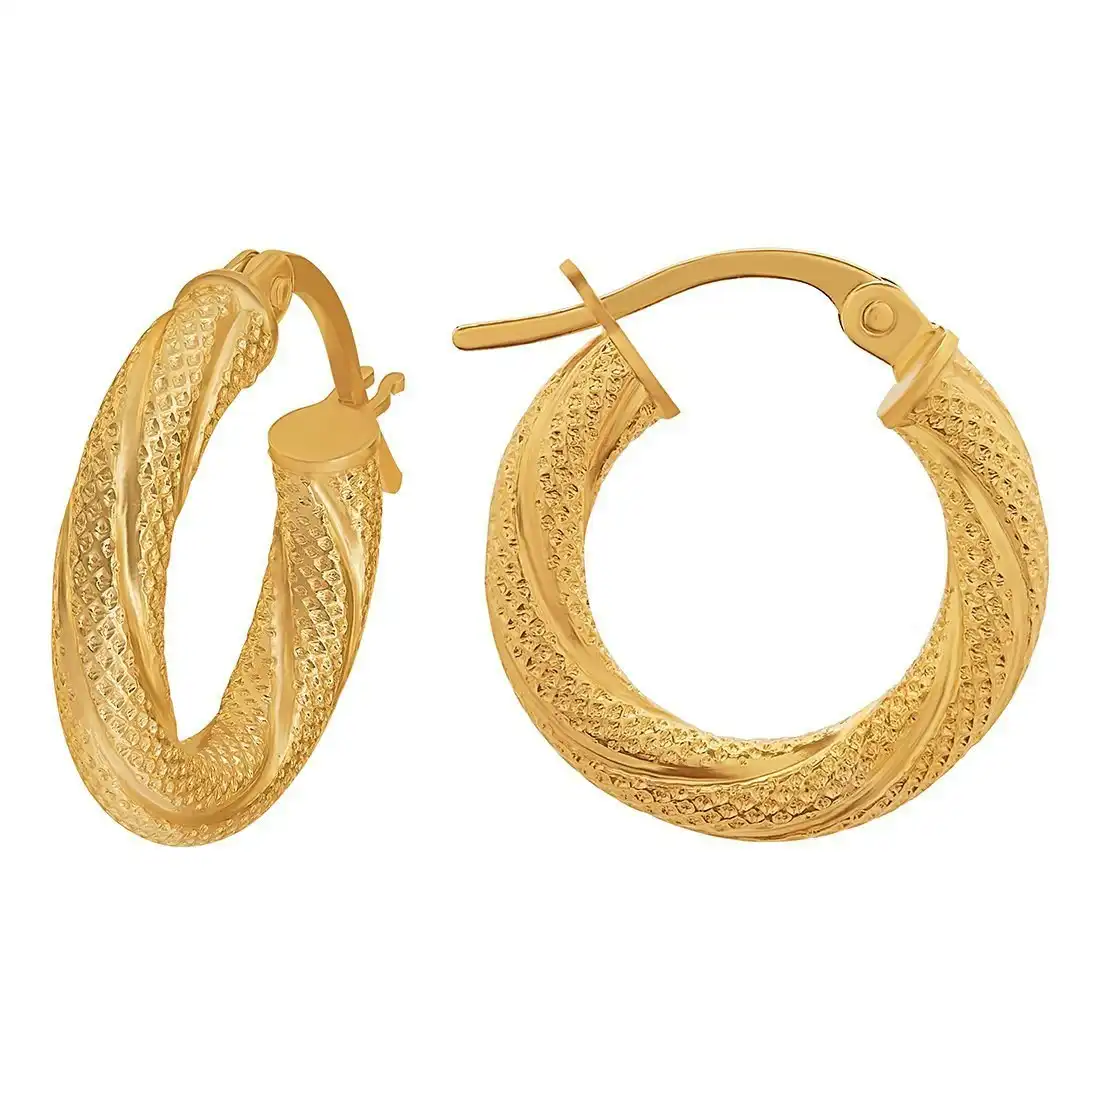 9ct Yellow Gold Patterned Twist Hoop Earrings 15mm